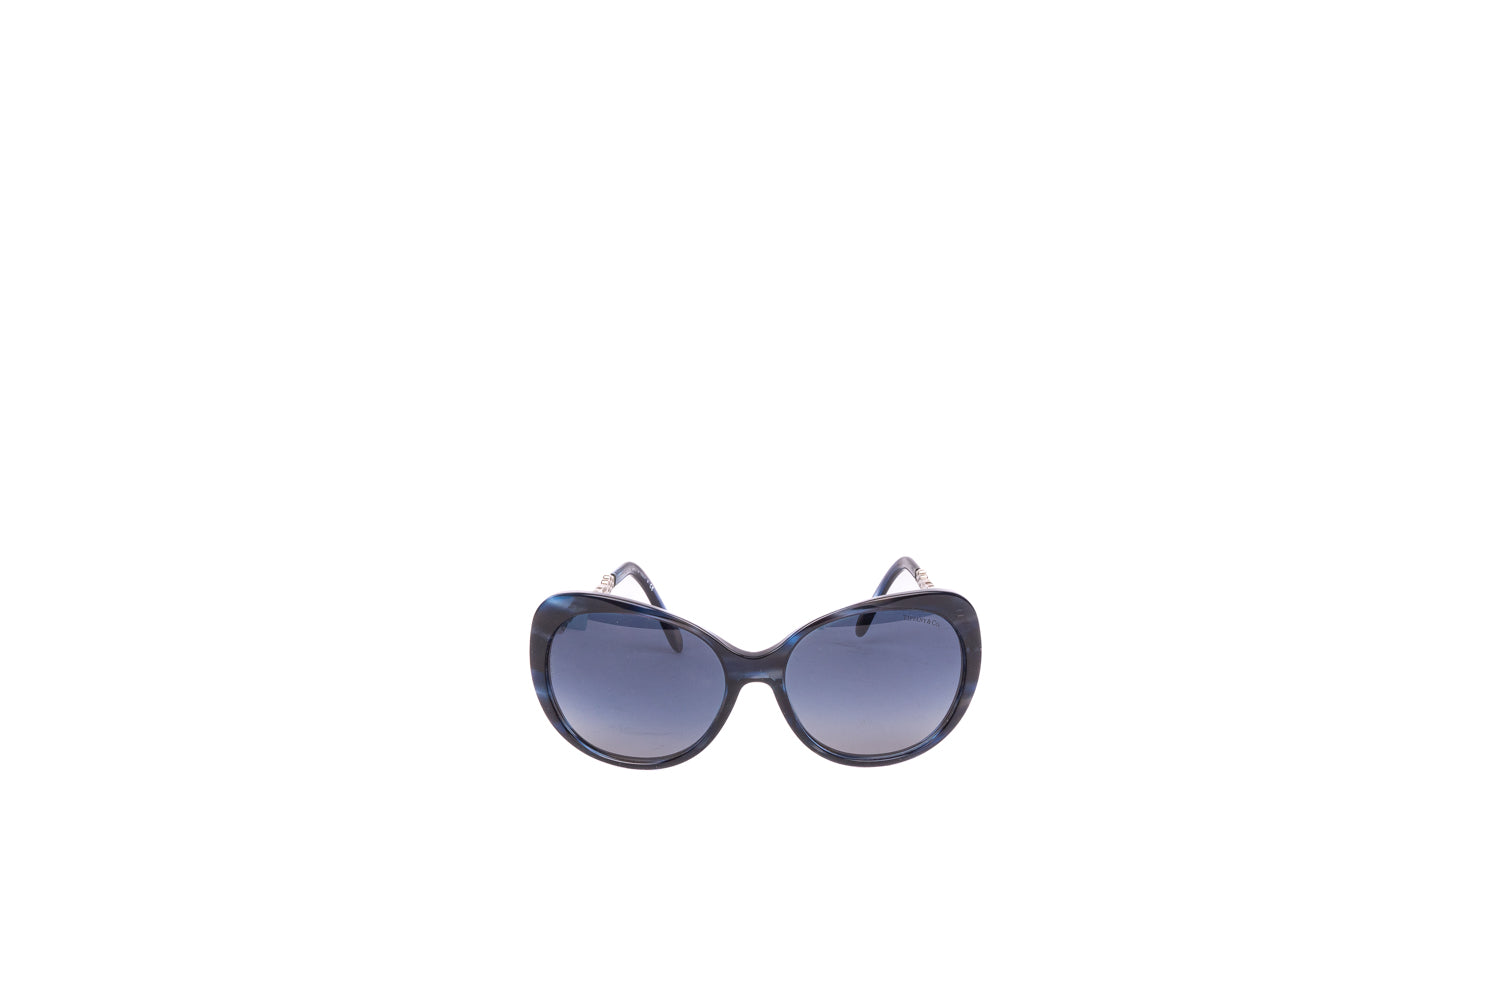 Embellished Frame Sunglasses